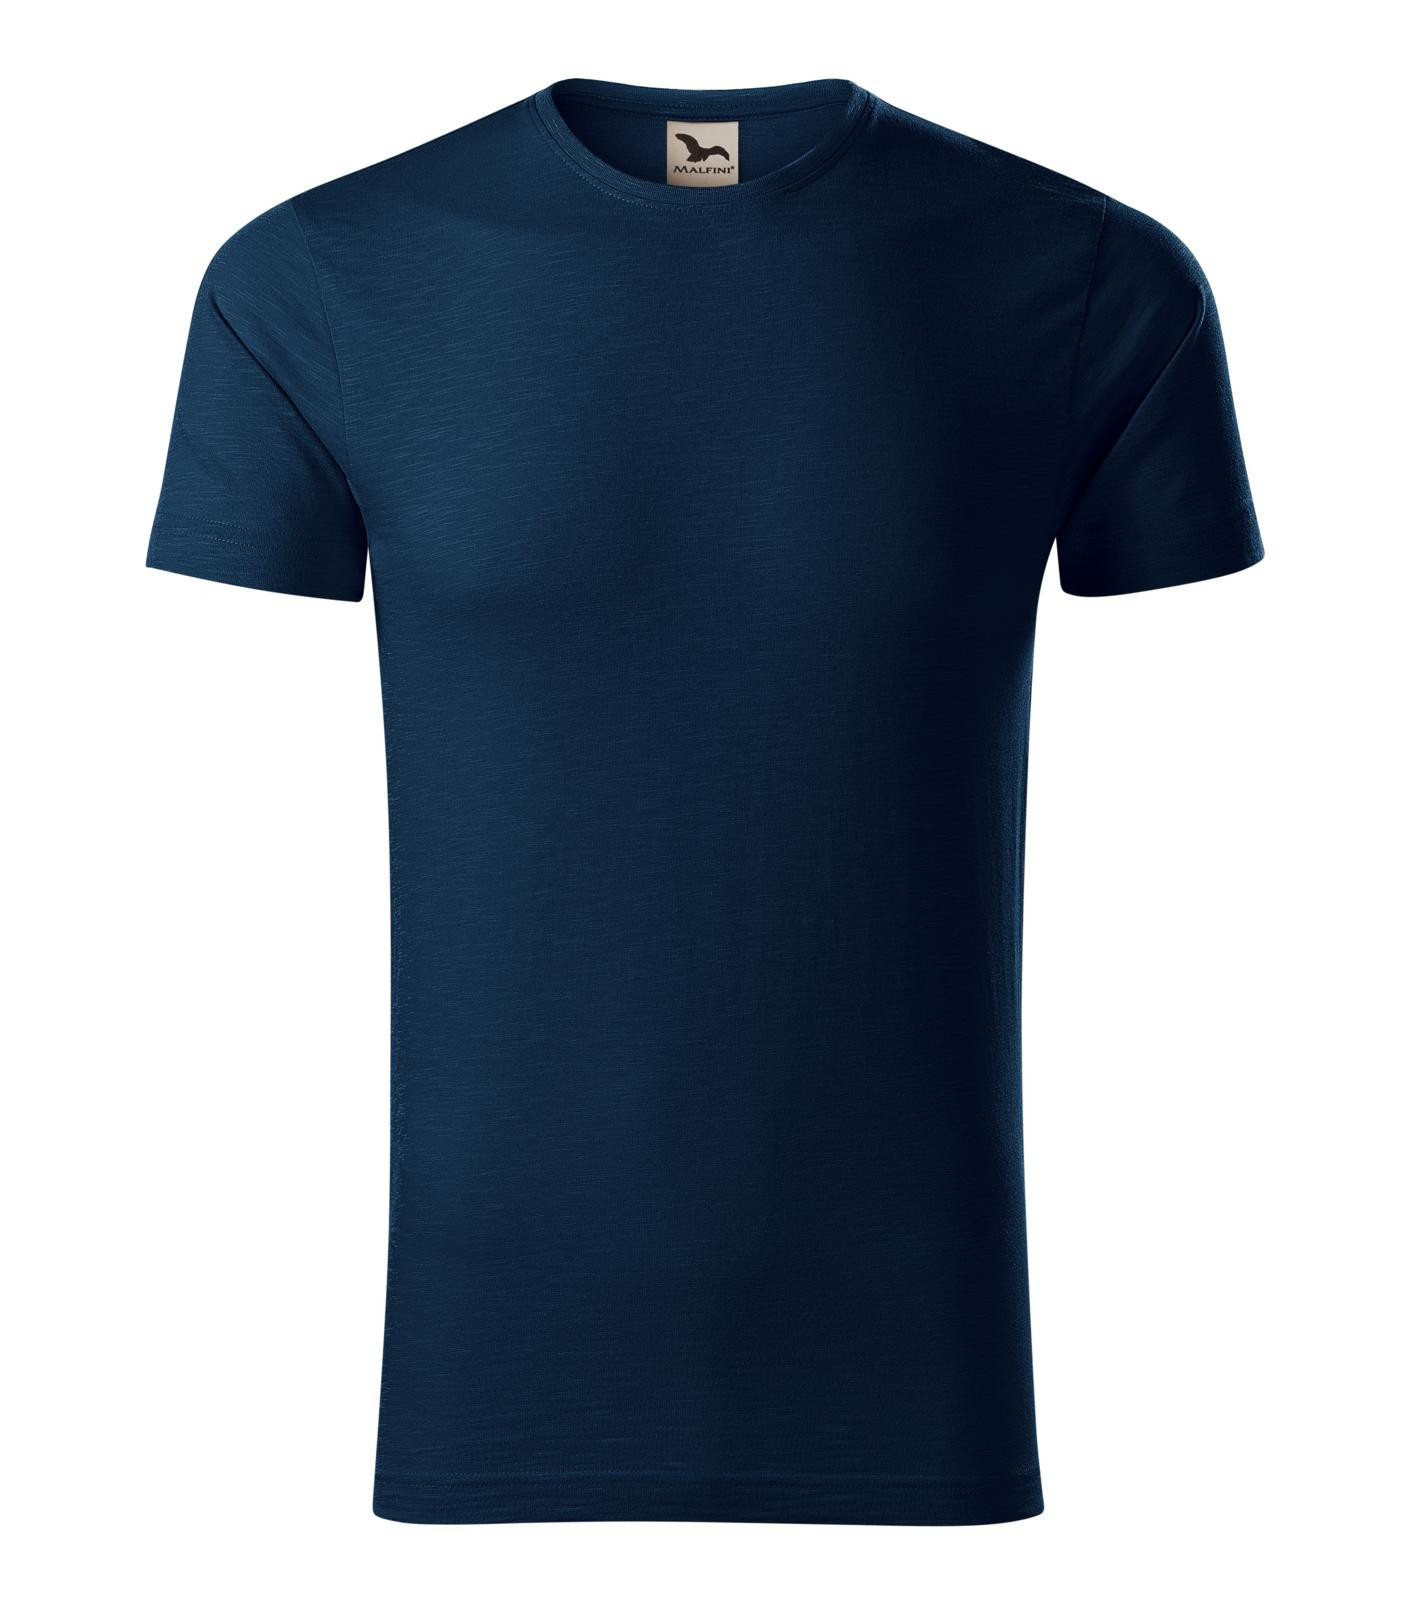 Pánske bavlnené tričko Malfini Native 173 - veľkosť: L, farba: tmavo modrá